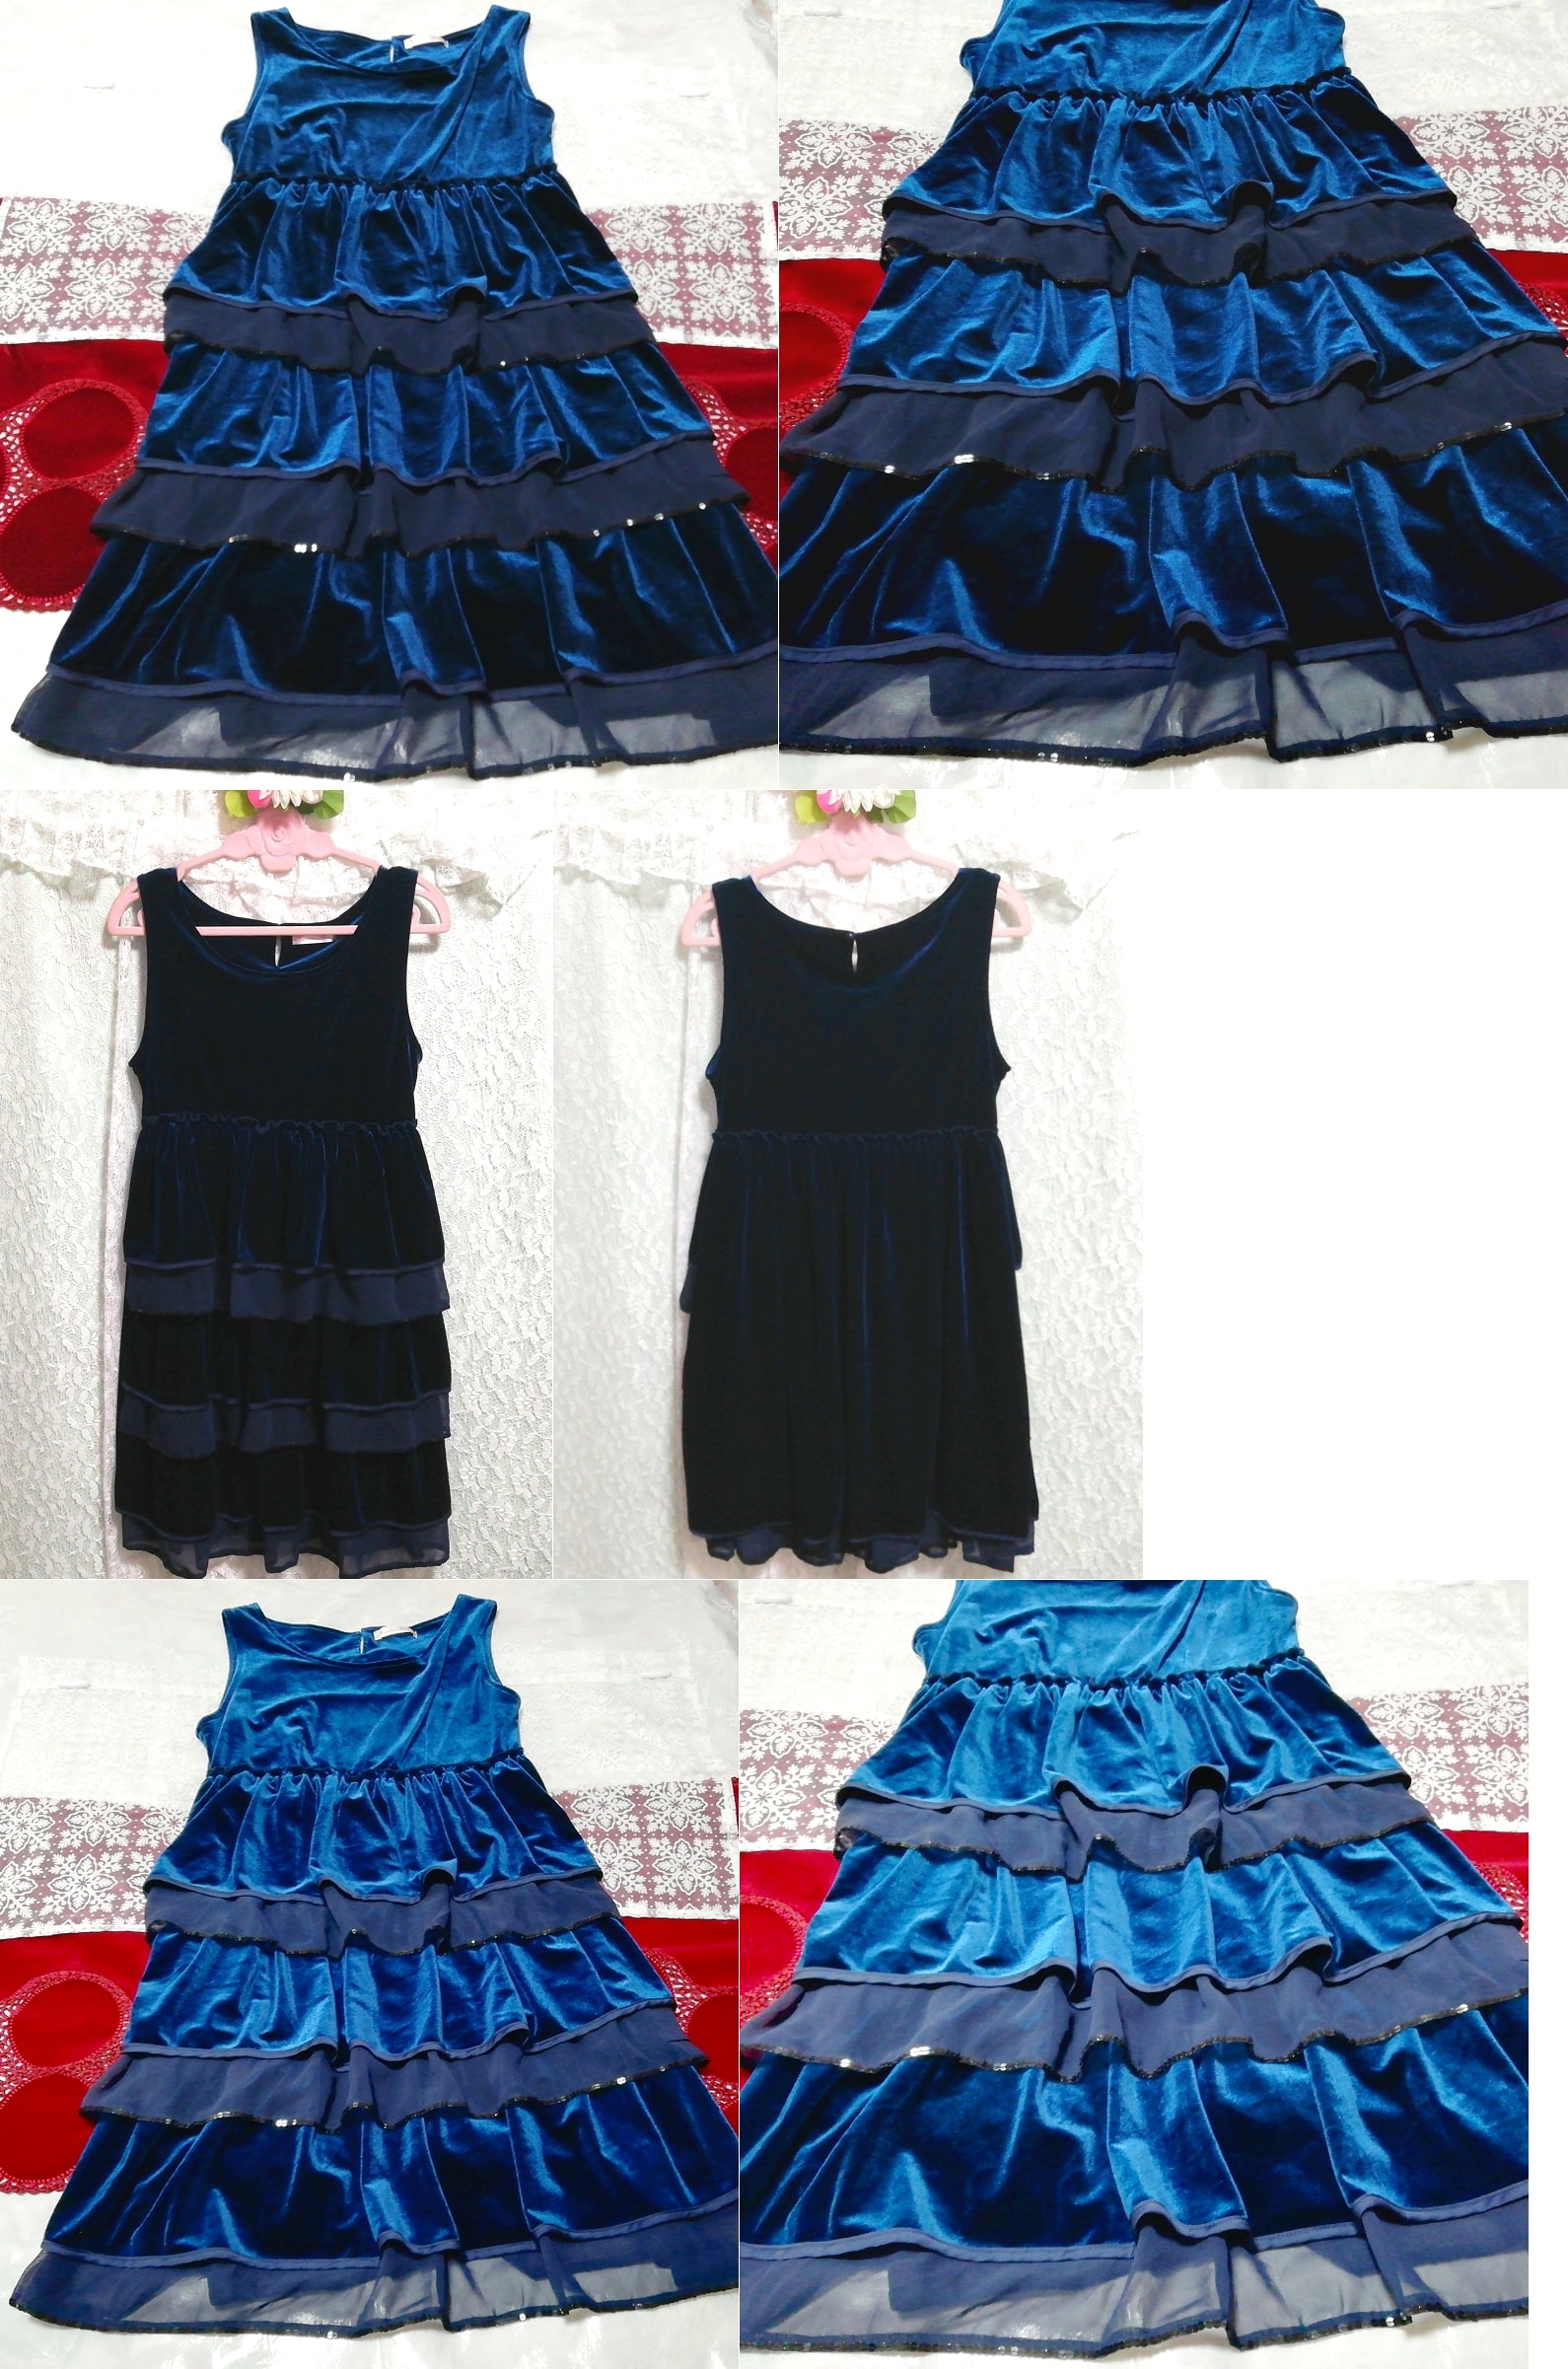 블루 벨루어 플레어 네글리제 나이트가운 나이트웨어 민소매 원피스 드레스, 패션, 숙녀 패션, 잠옷, 잠옷